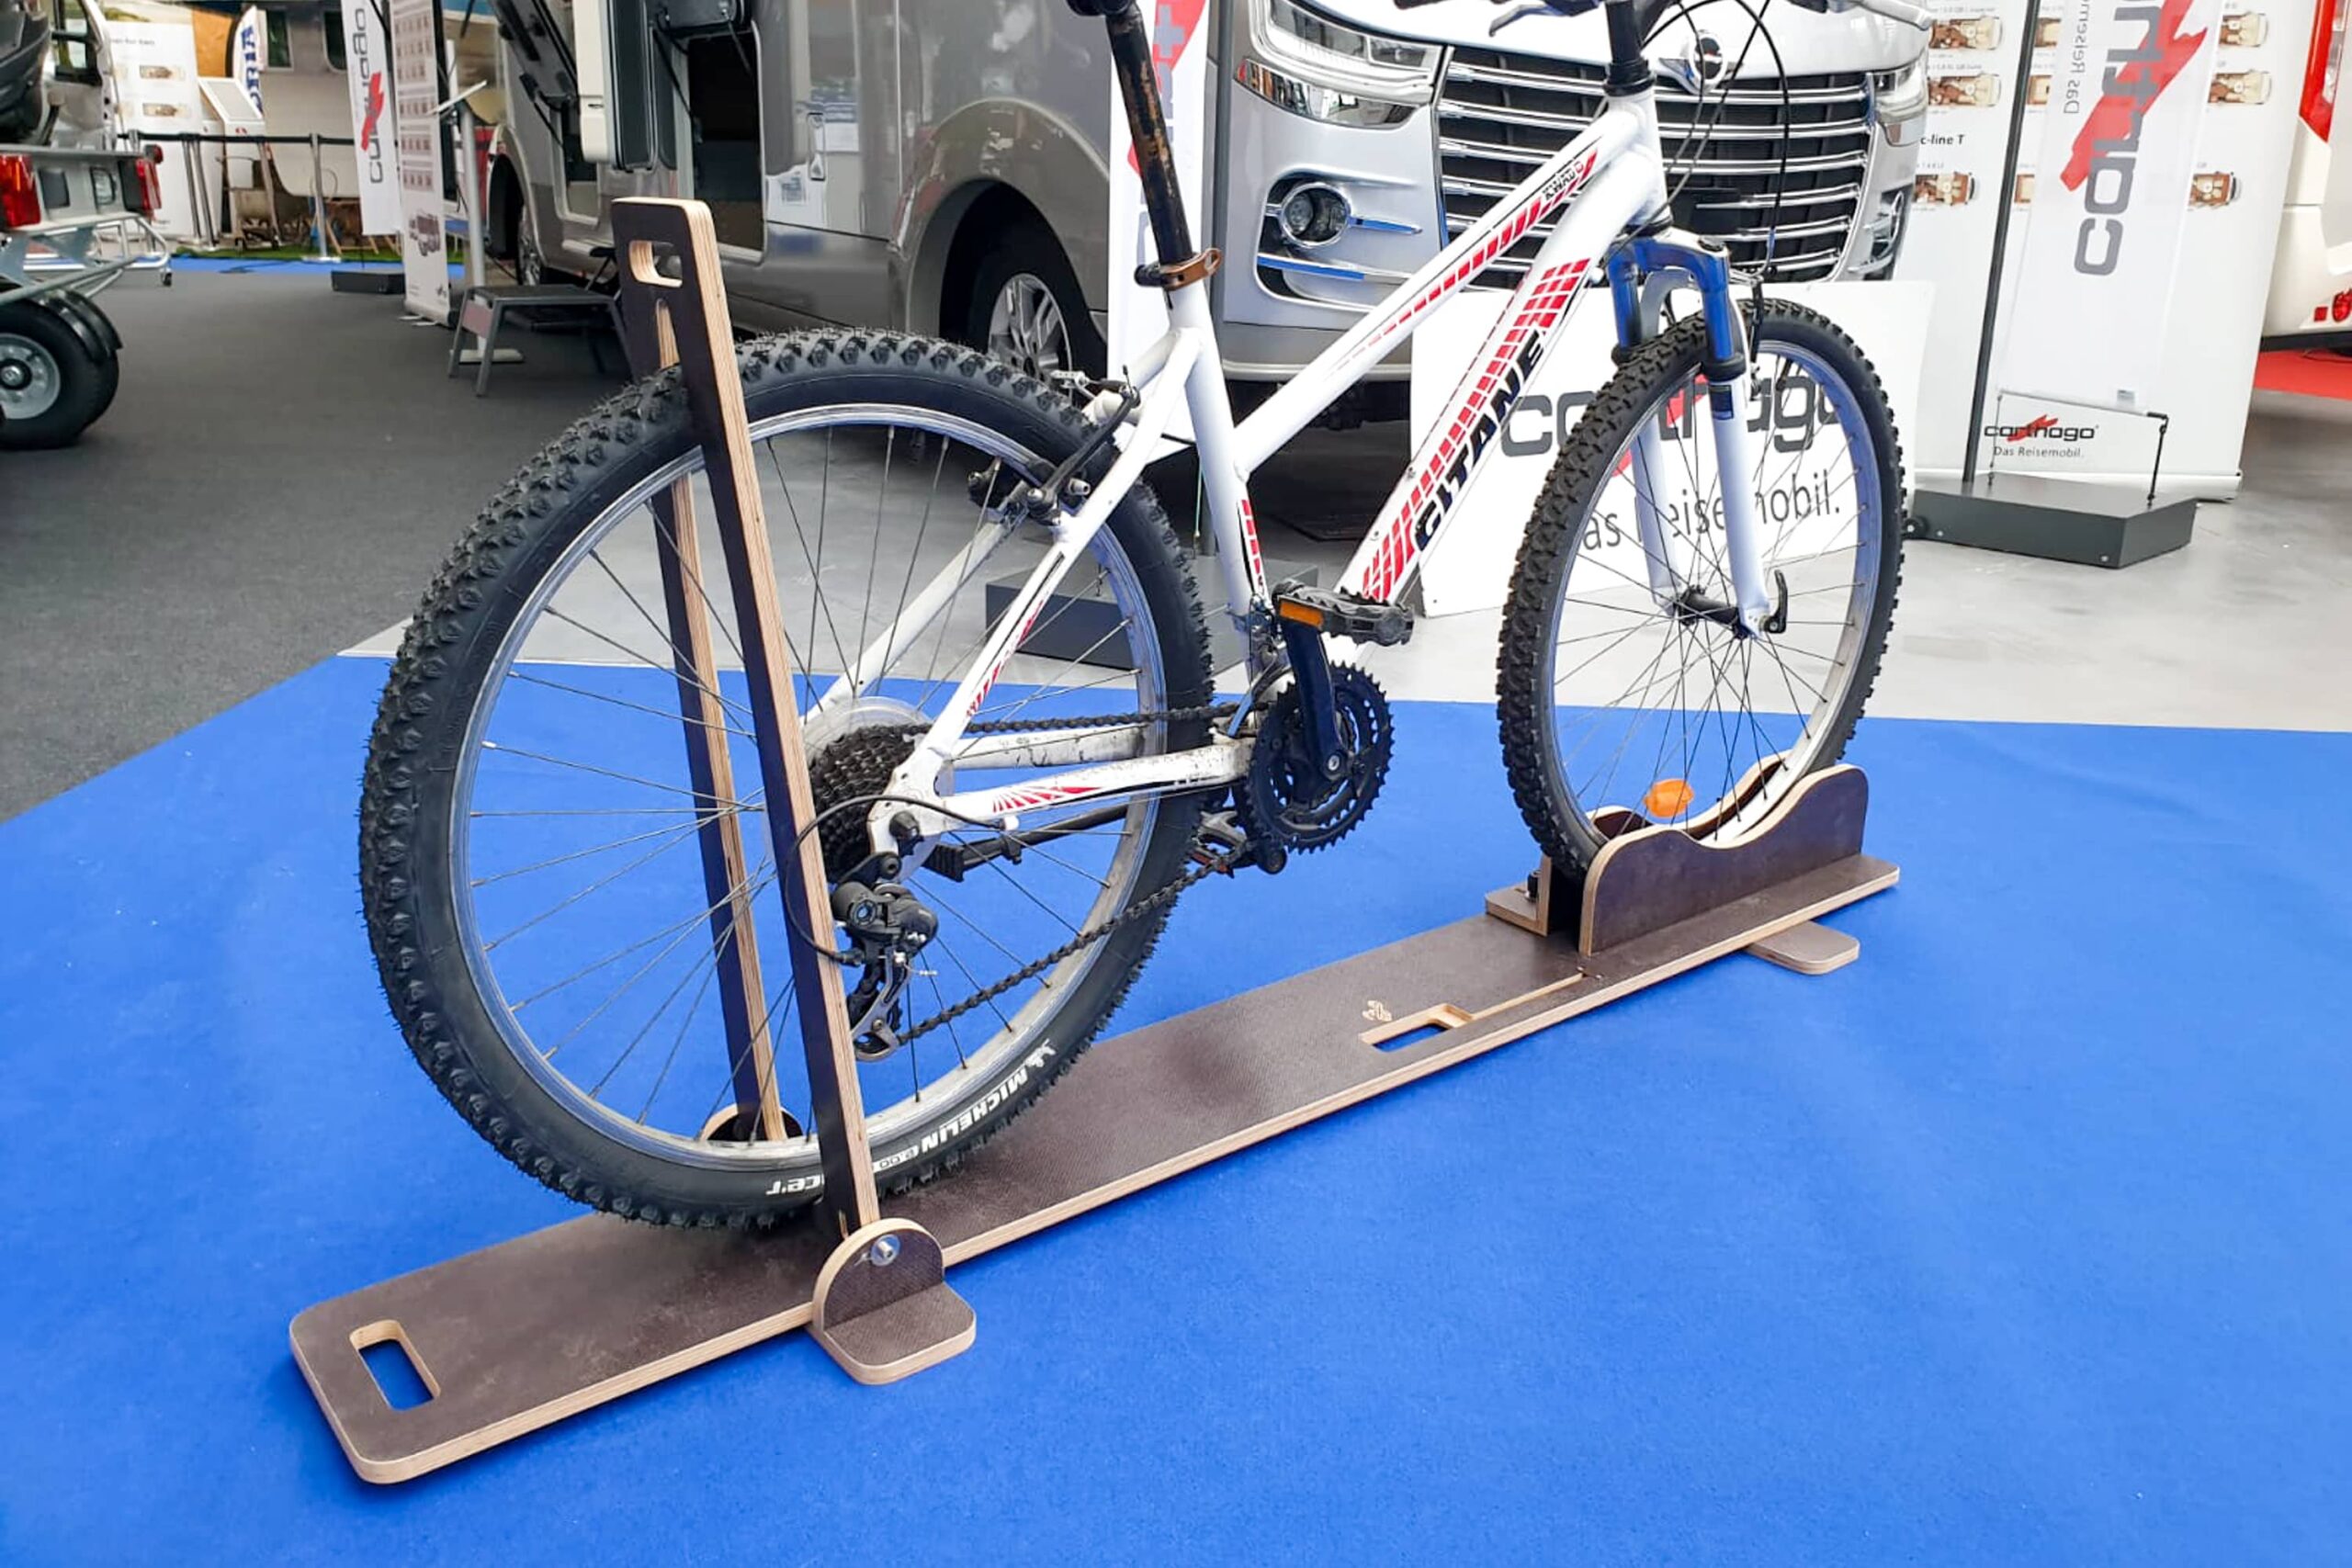 Tutoriel pour fabriquer un rangement à vélo vertical et gain de place